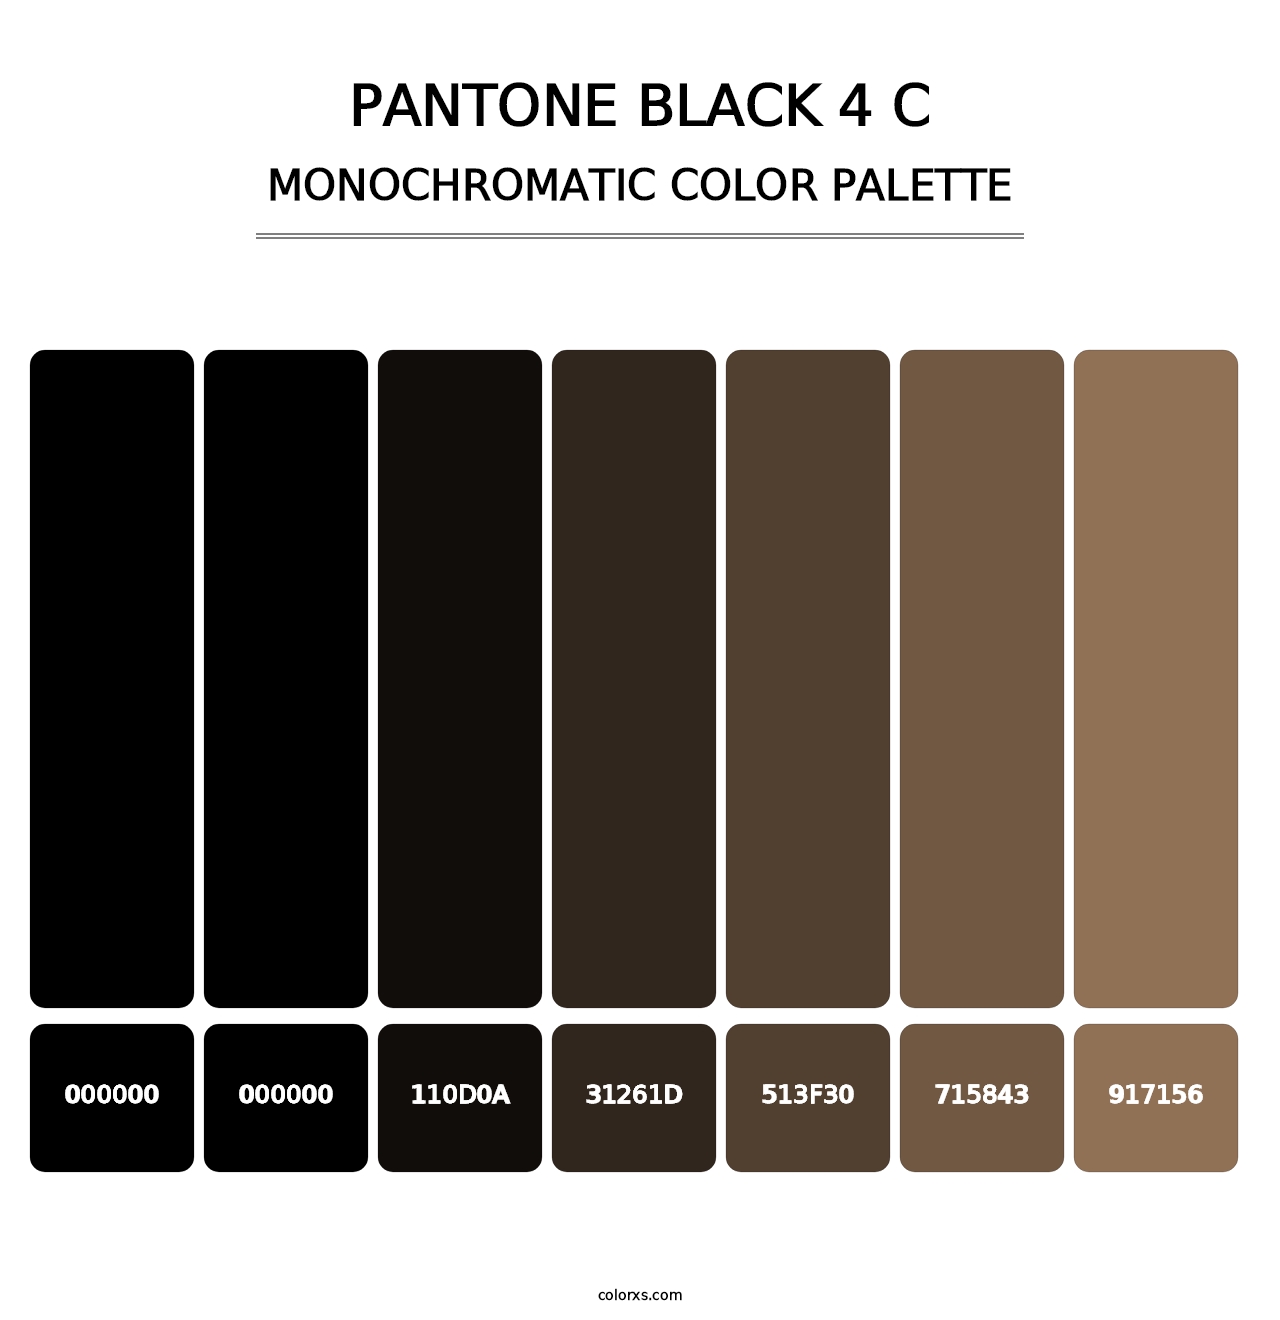 PANTONE Black 4 C - Monochromatic Color Palette